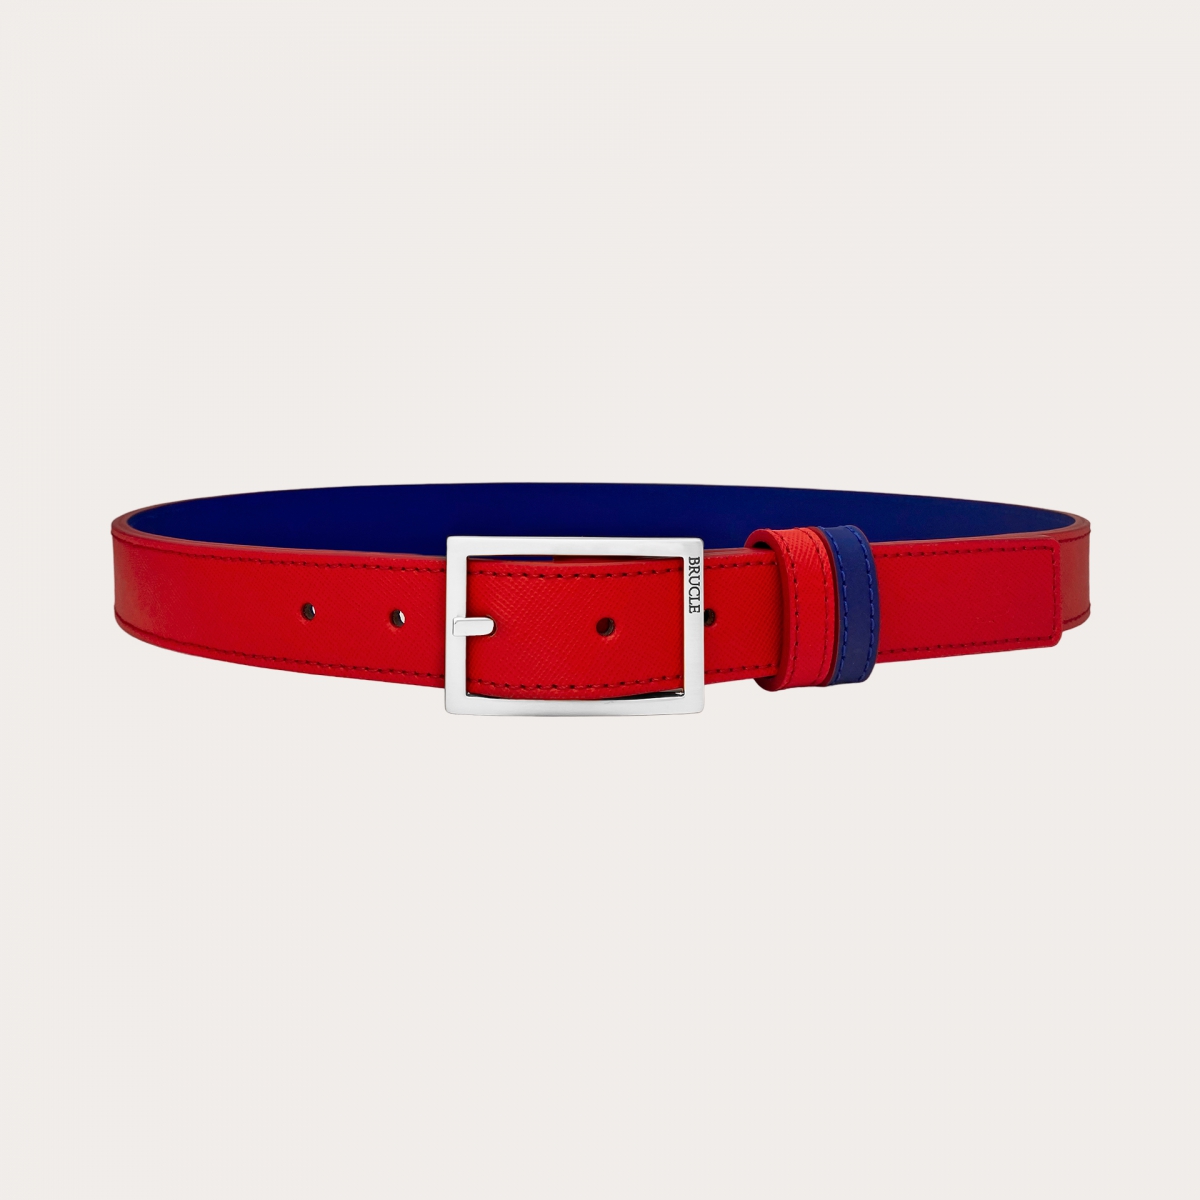 Cinturón reversible en Saffiano rojo y piel azul real